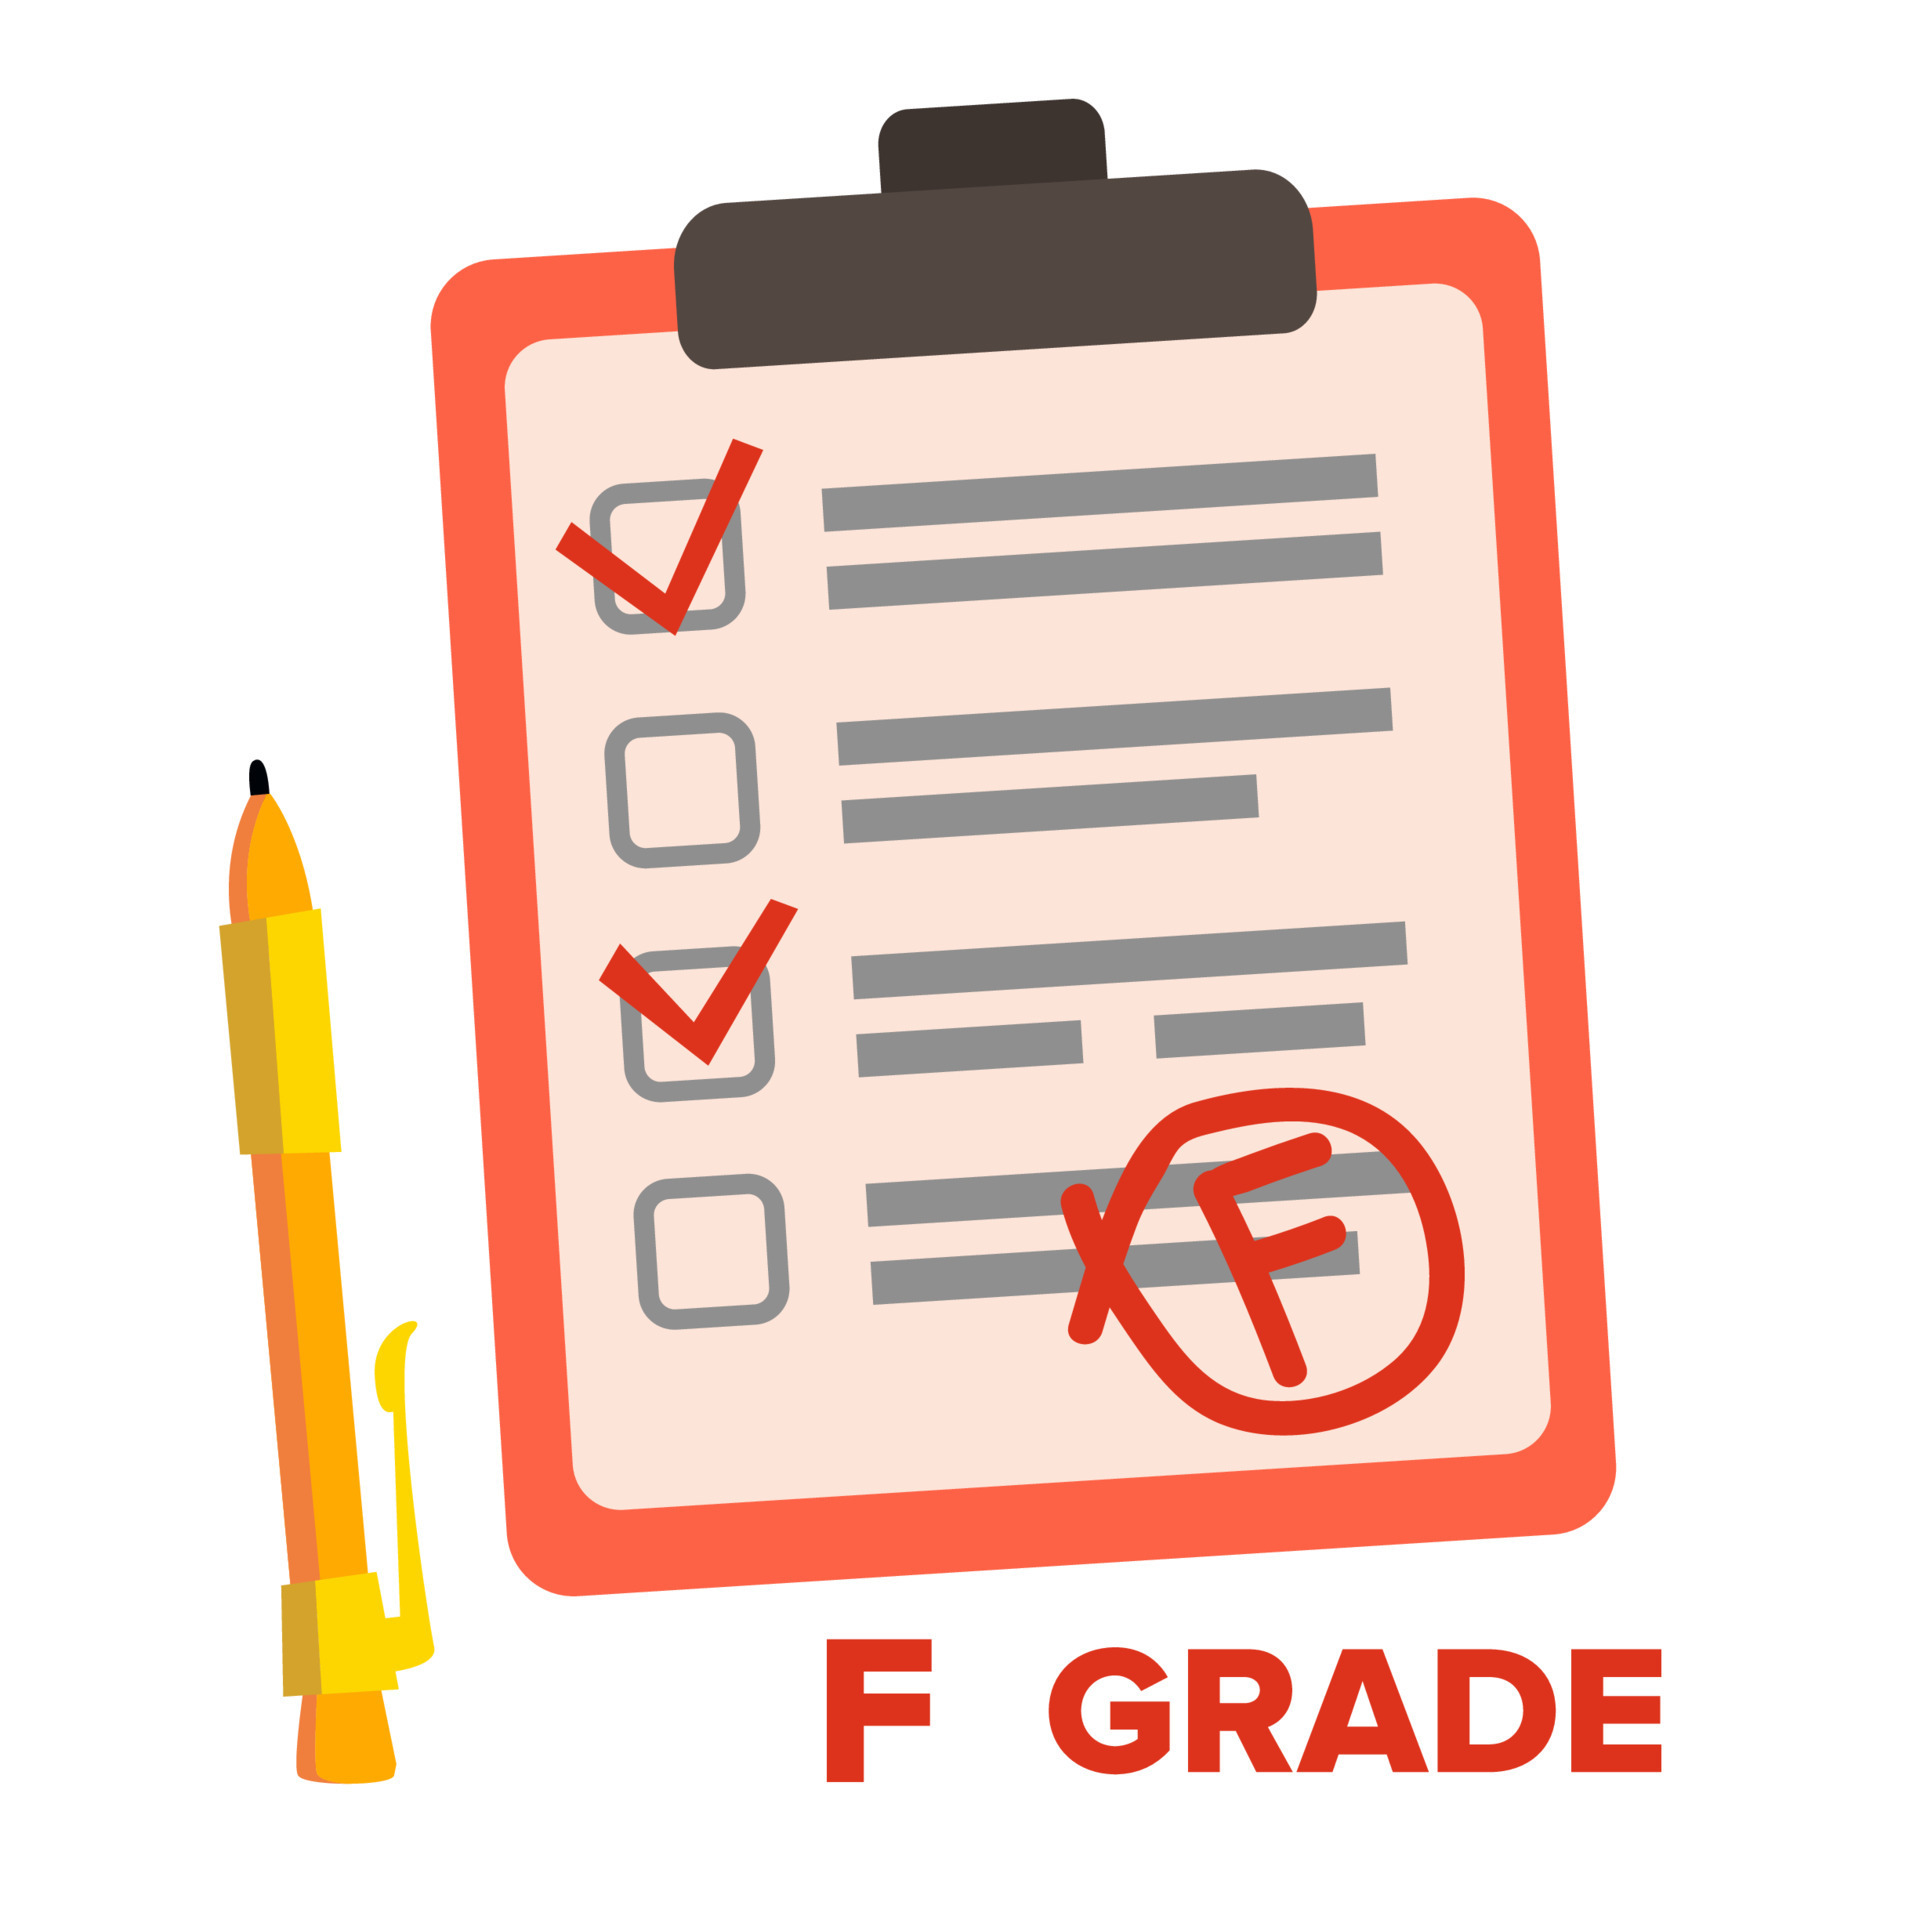 F Grade. Grade vector. Failed Exam cartoon. Grad f(r). Flat marking